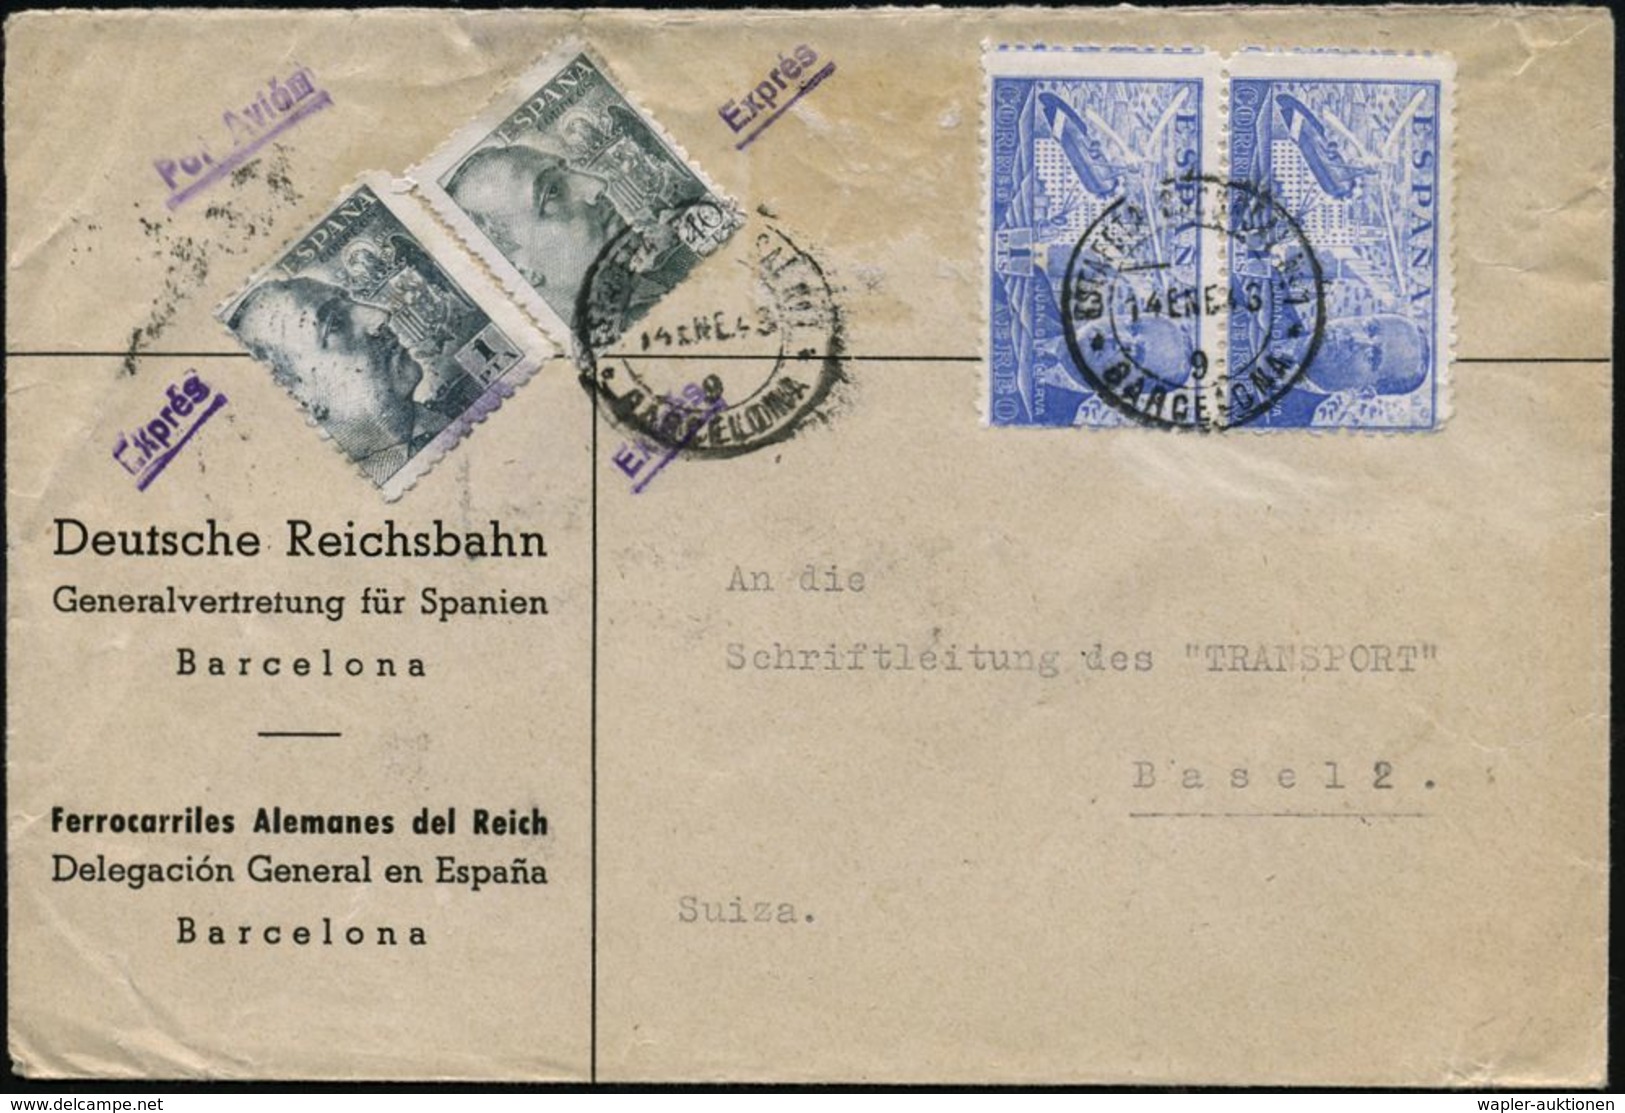 EISENBAHN-GESELLSCHAFTEN / REICHSBAHN / BUNDESBAHN : SPANIEN 1943 (14.1.) Dienst-Bf: Deutsche Reichsbahn/Generalvertretu - Treni